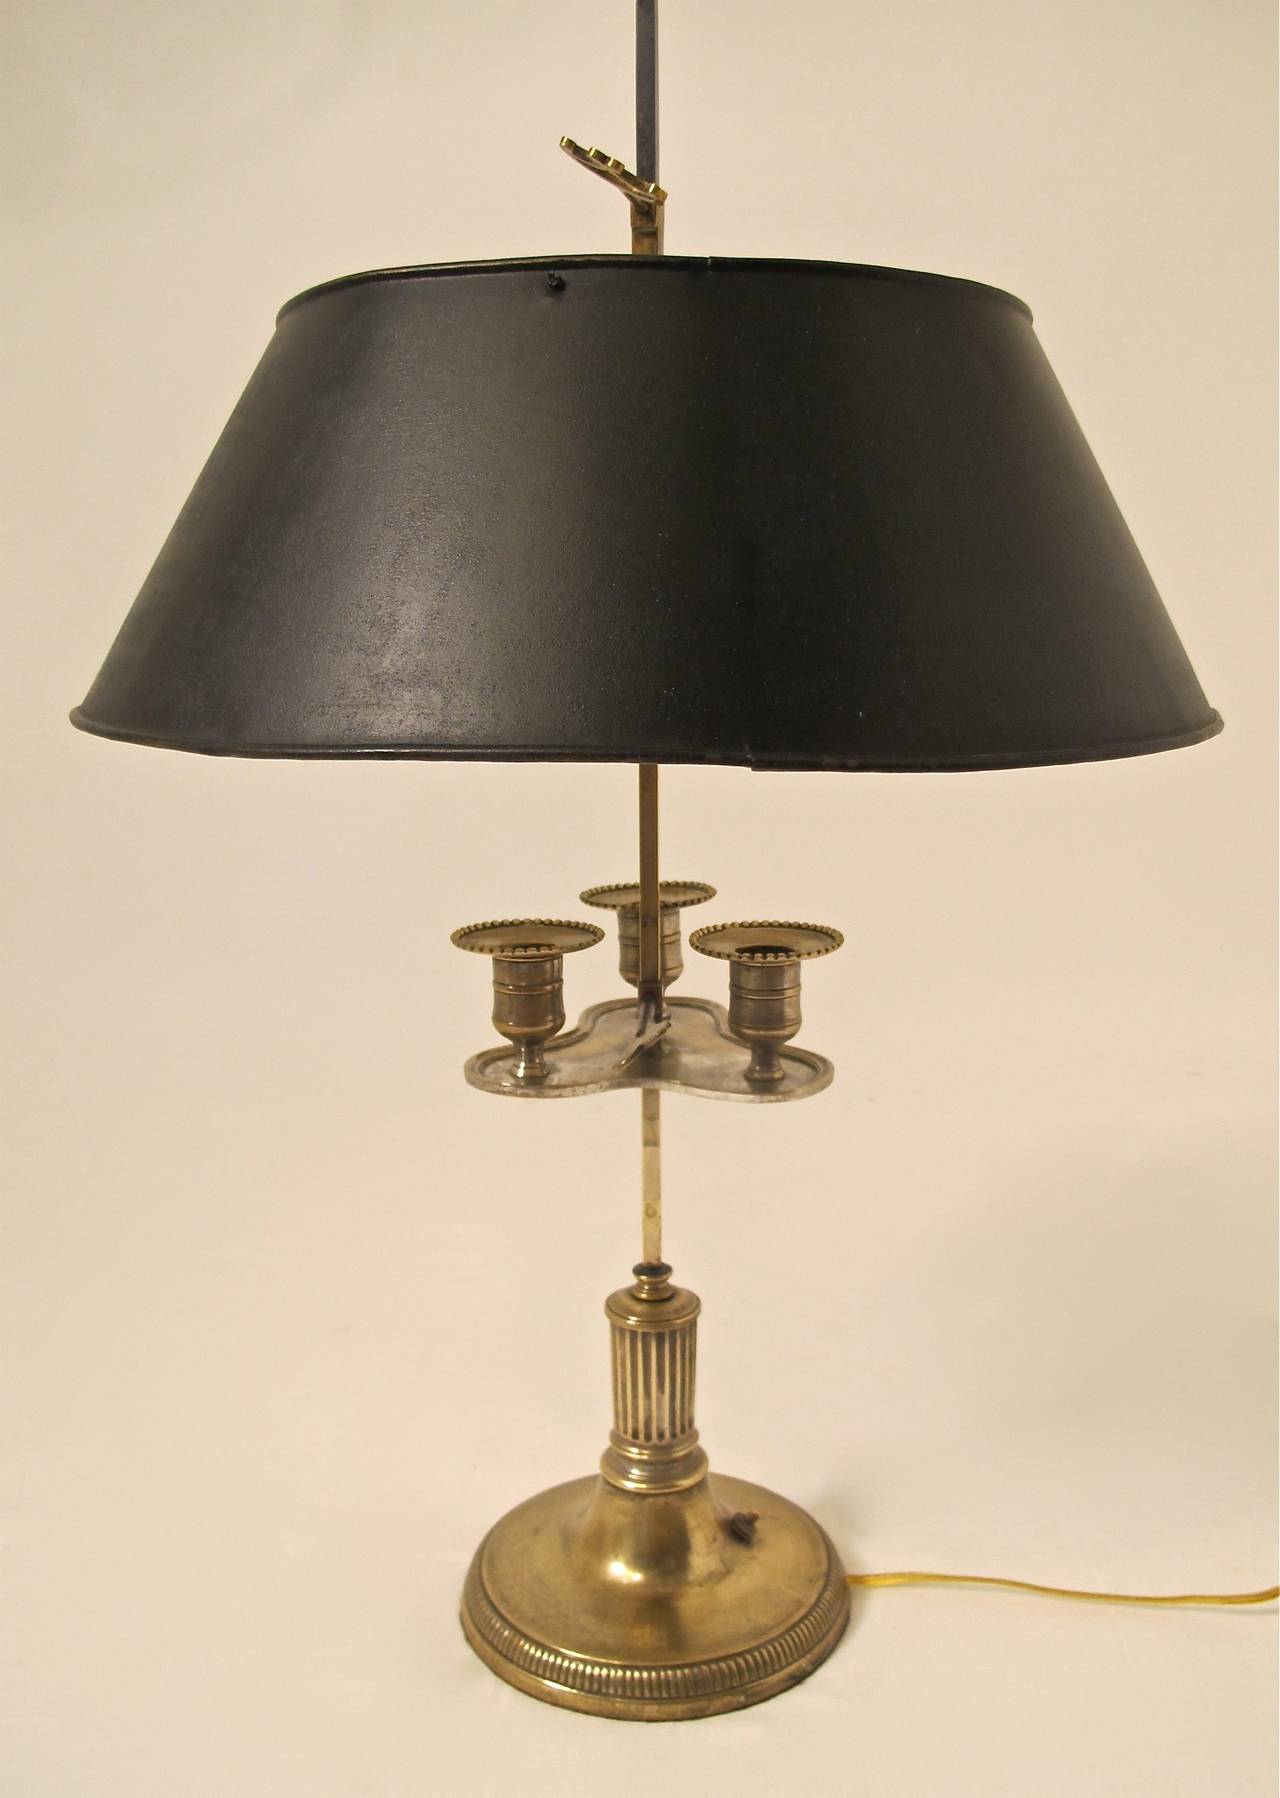 Lampe bouillotte à bougie en laiton du début du 19ème siècle avec des restes de plaque d'argent, maintenant convertie en électrique.